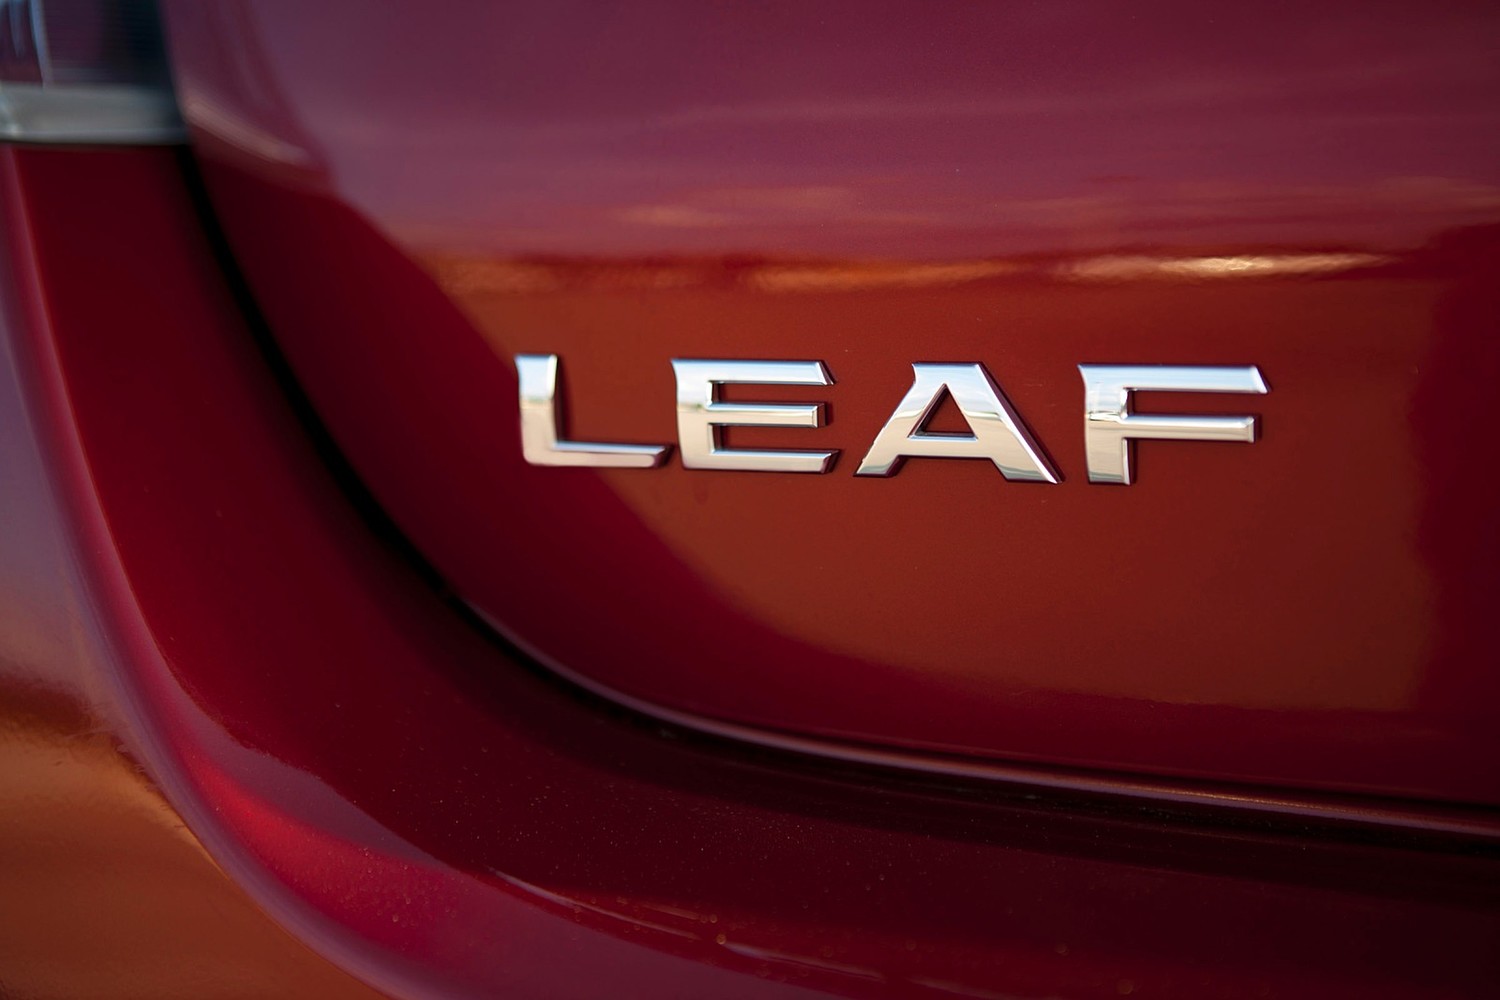 Nissan Leaf SL 4dr Hatchback Rear Badge (2014 model year shown)